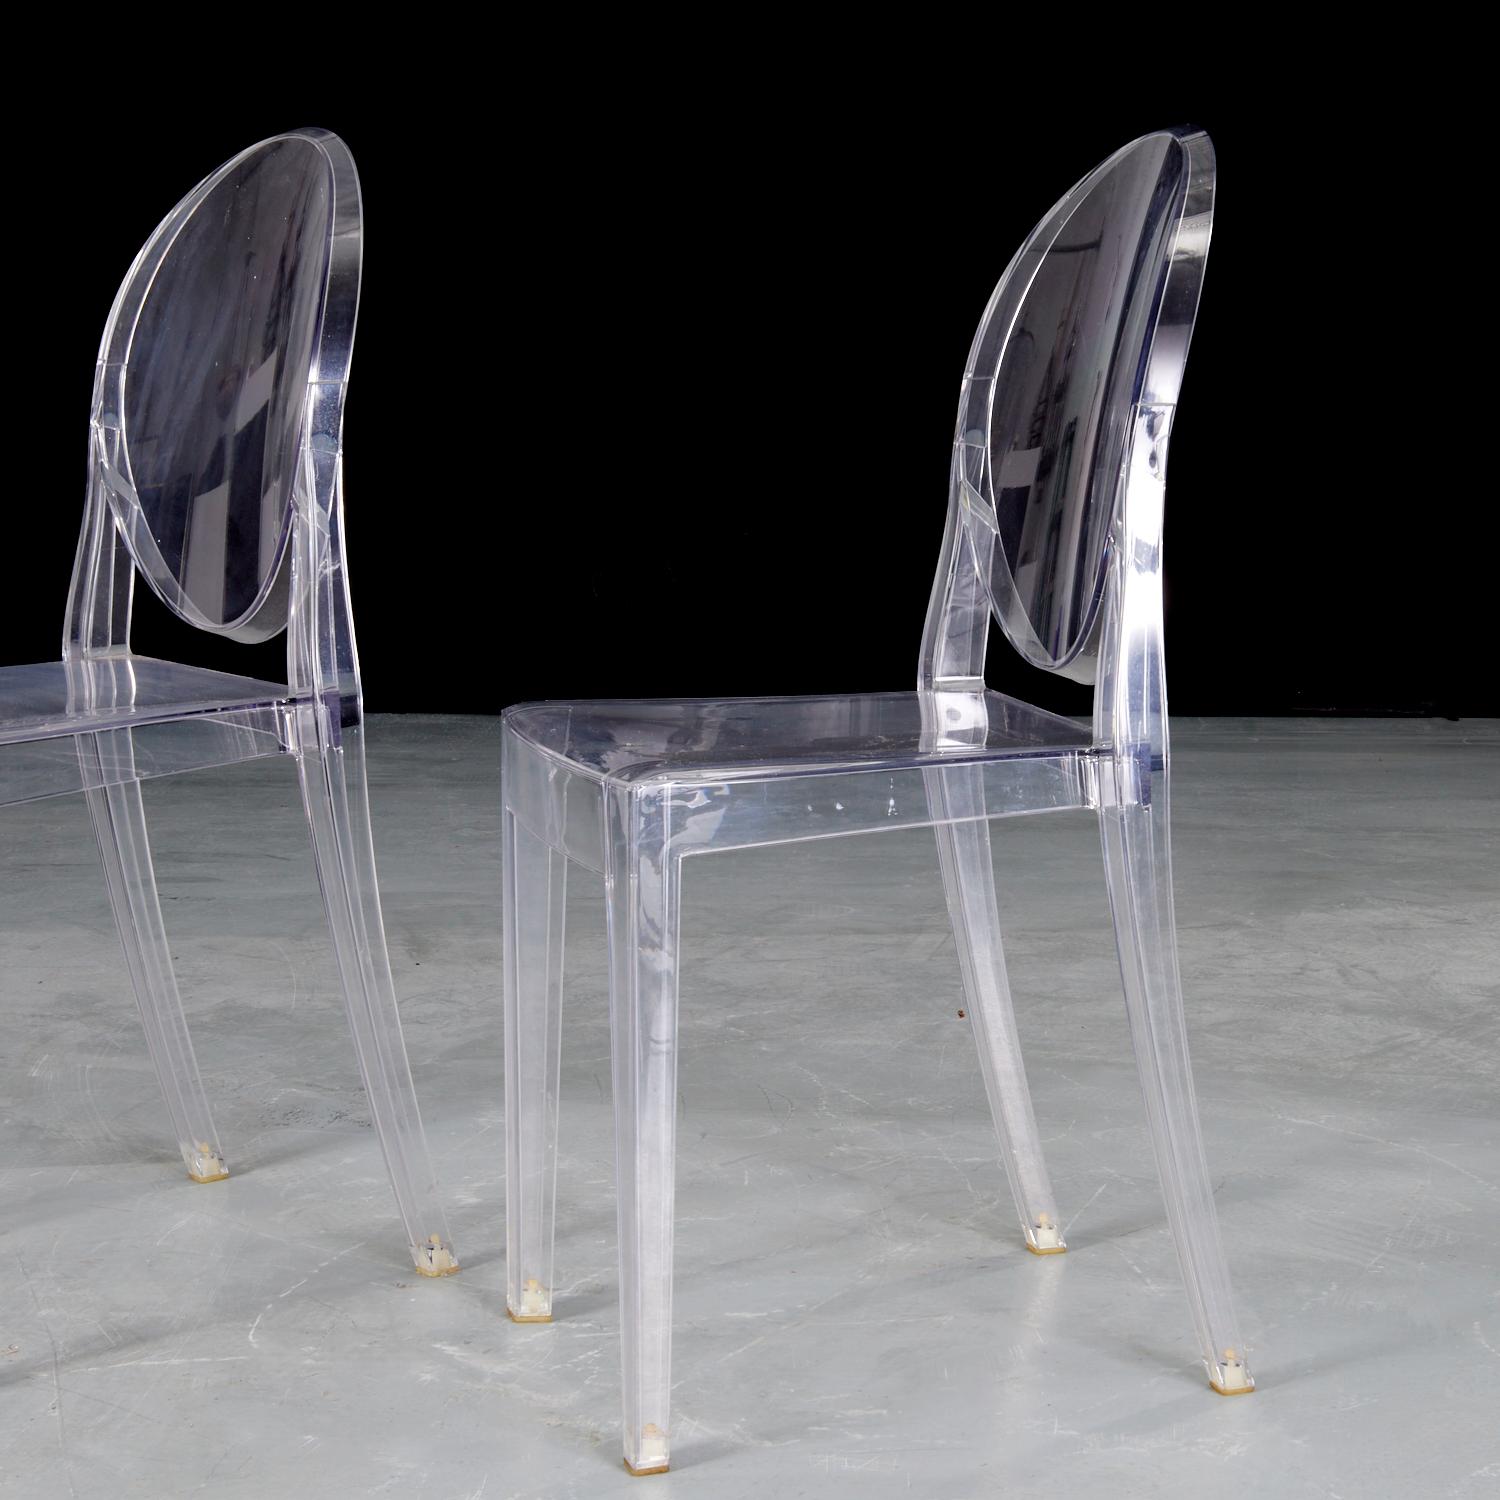 21. Jh., Starck für Kartell, ein Paar durchsichtige Victoria Ghost Stühle, auf der Rückseite markiert.

Der von Philippe Starck entworfene Kartell Victoria Ghost Chair ist ein Stuhl, der klassische Linien und moderne Technologien vereint. Die